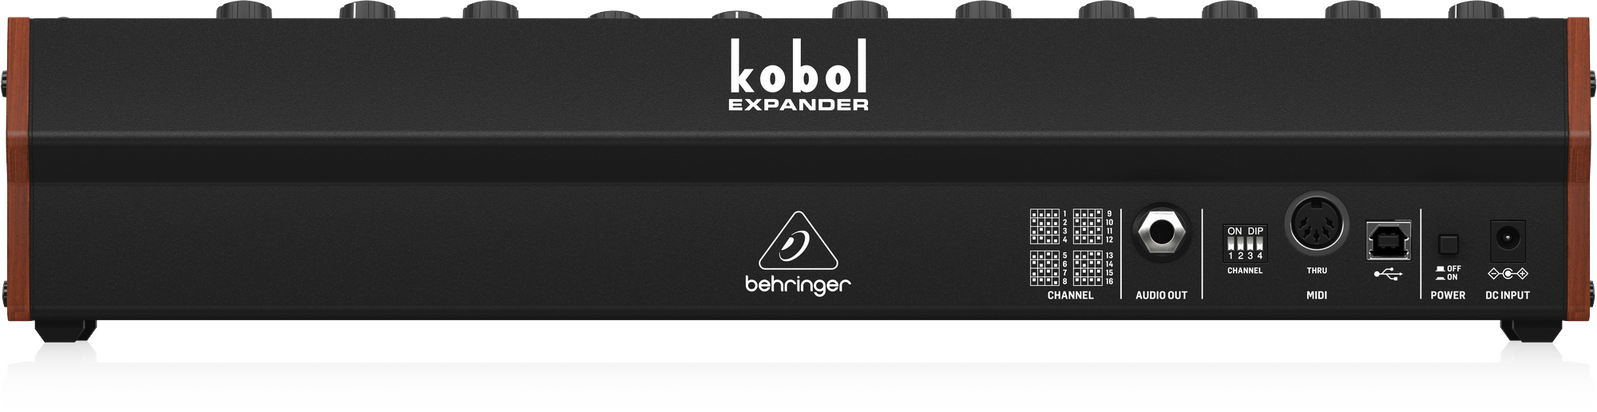 Behringer Kobol-Expander